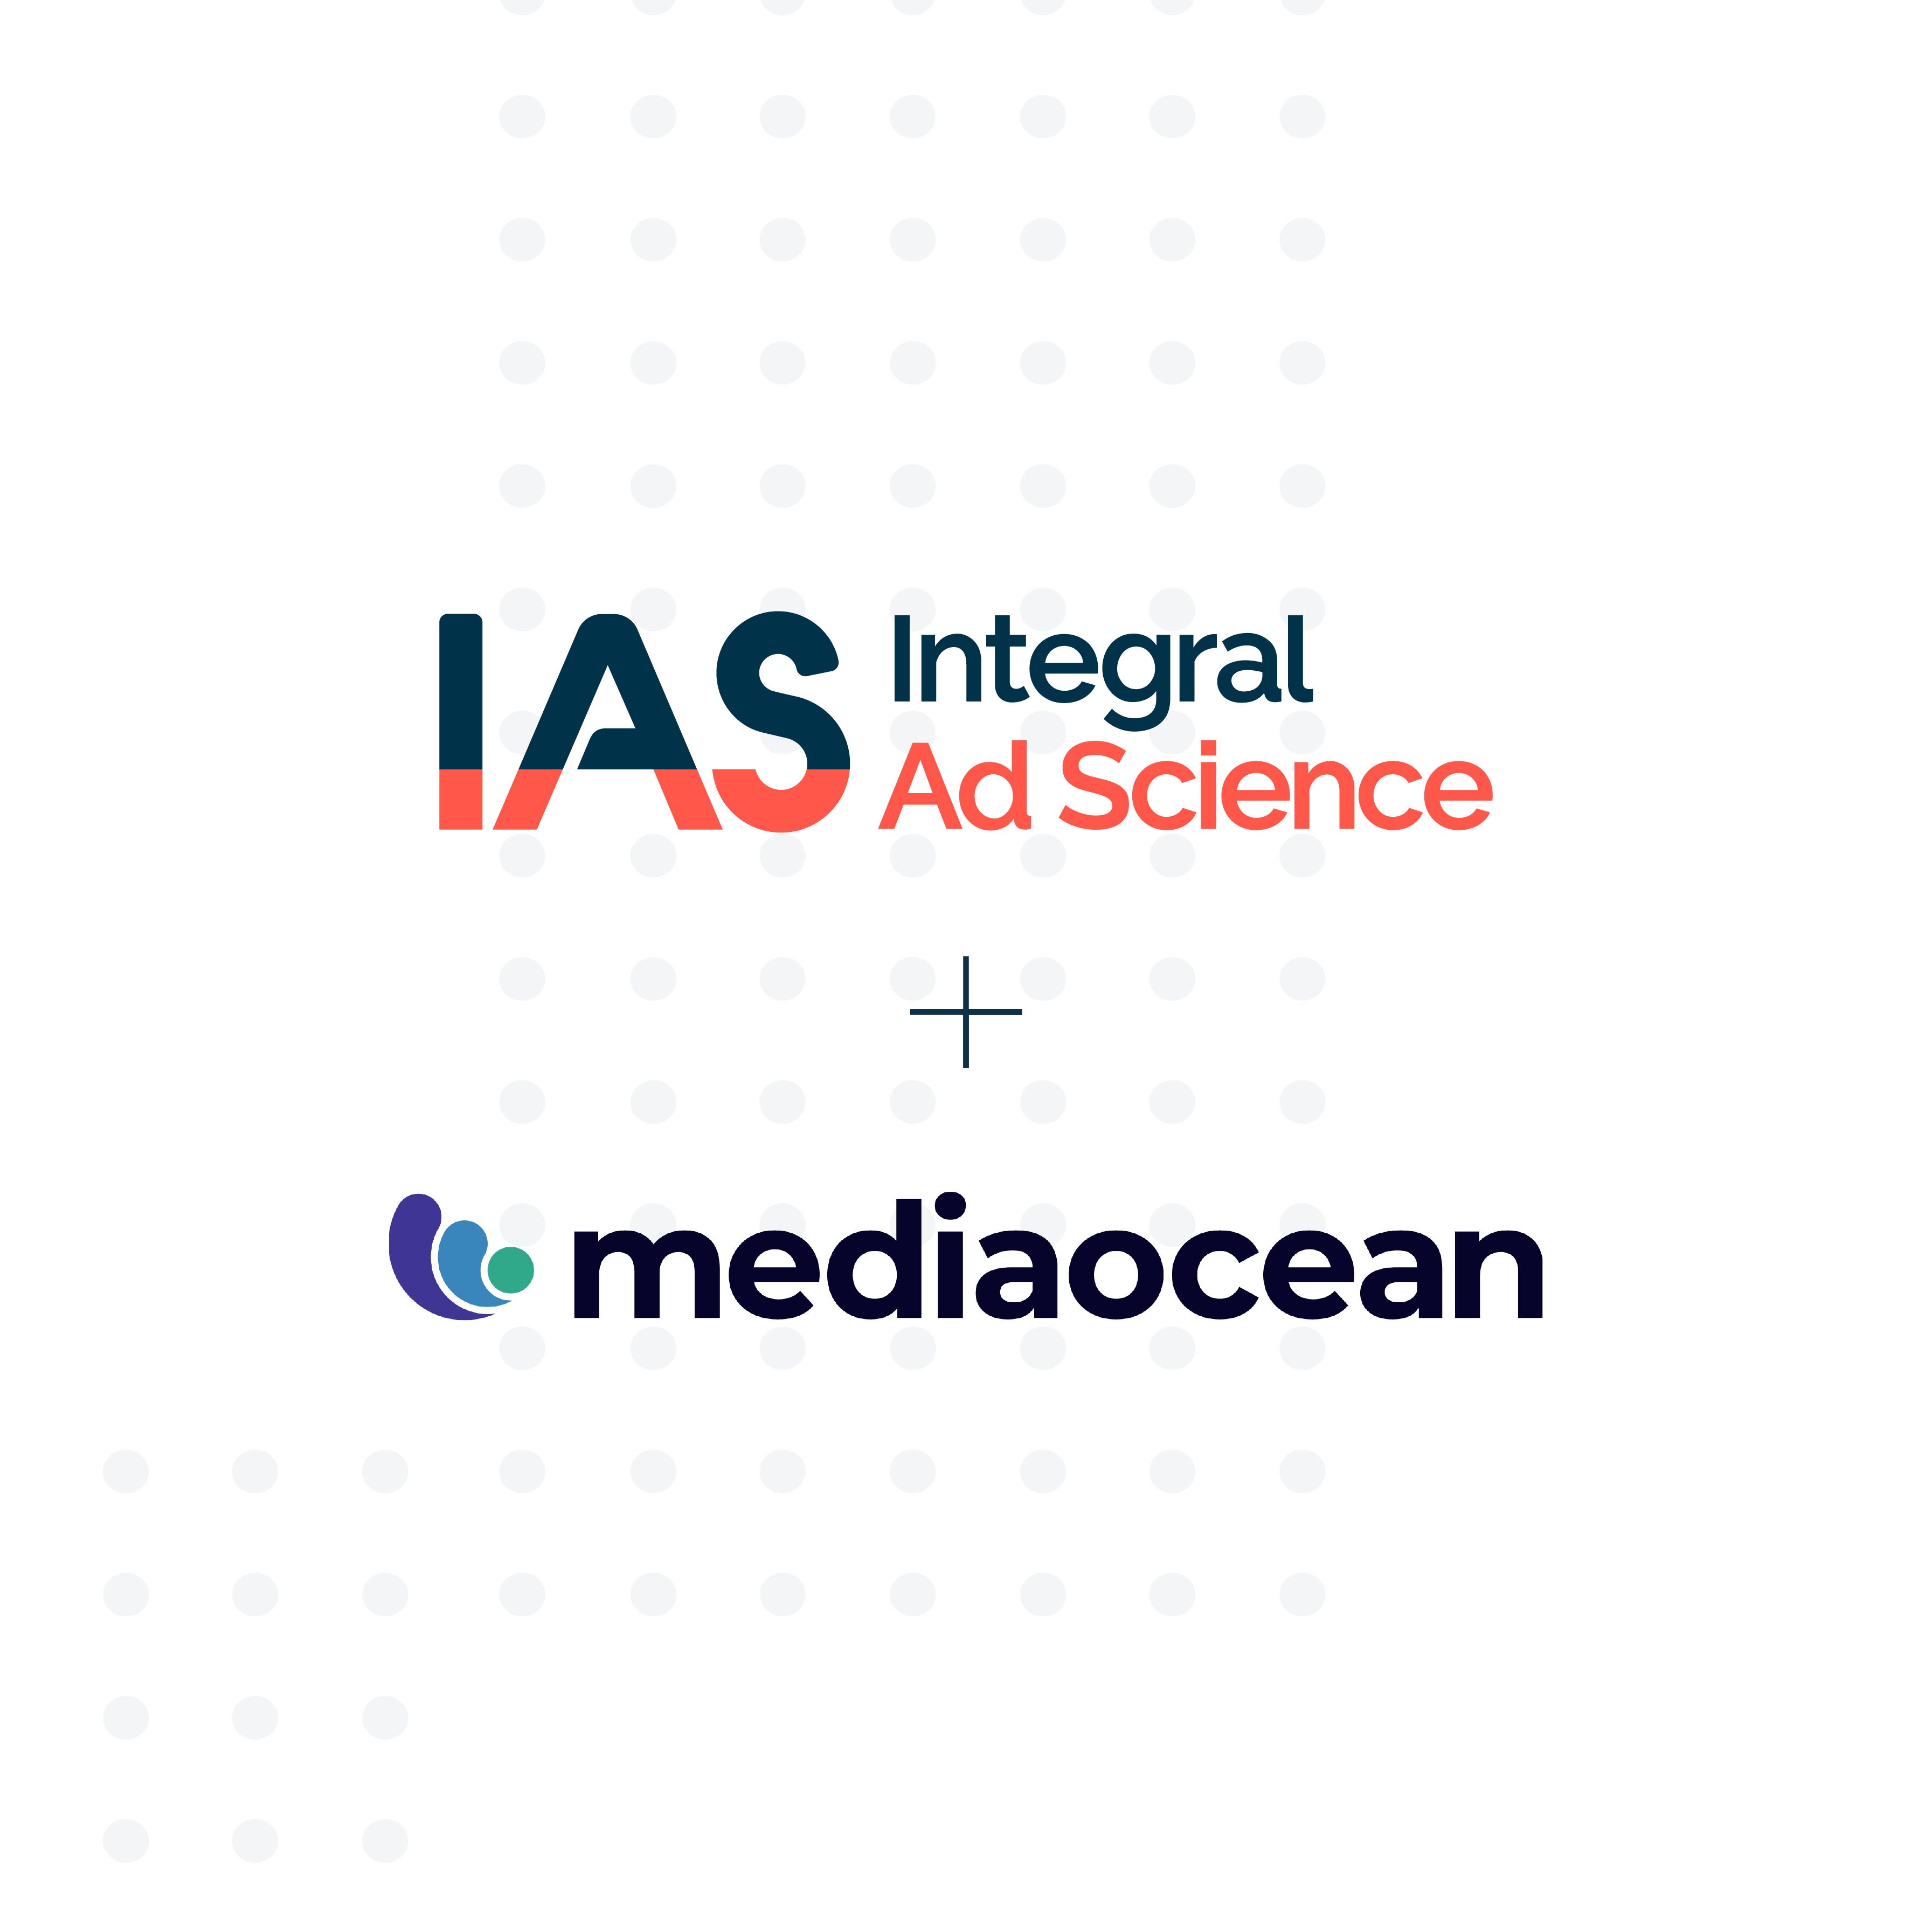 IAS und Mediaocean erweitern ihre Partnerschaft zur effizienten Automatisierung von End-to-End-Werbekampagnen